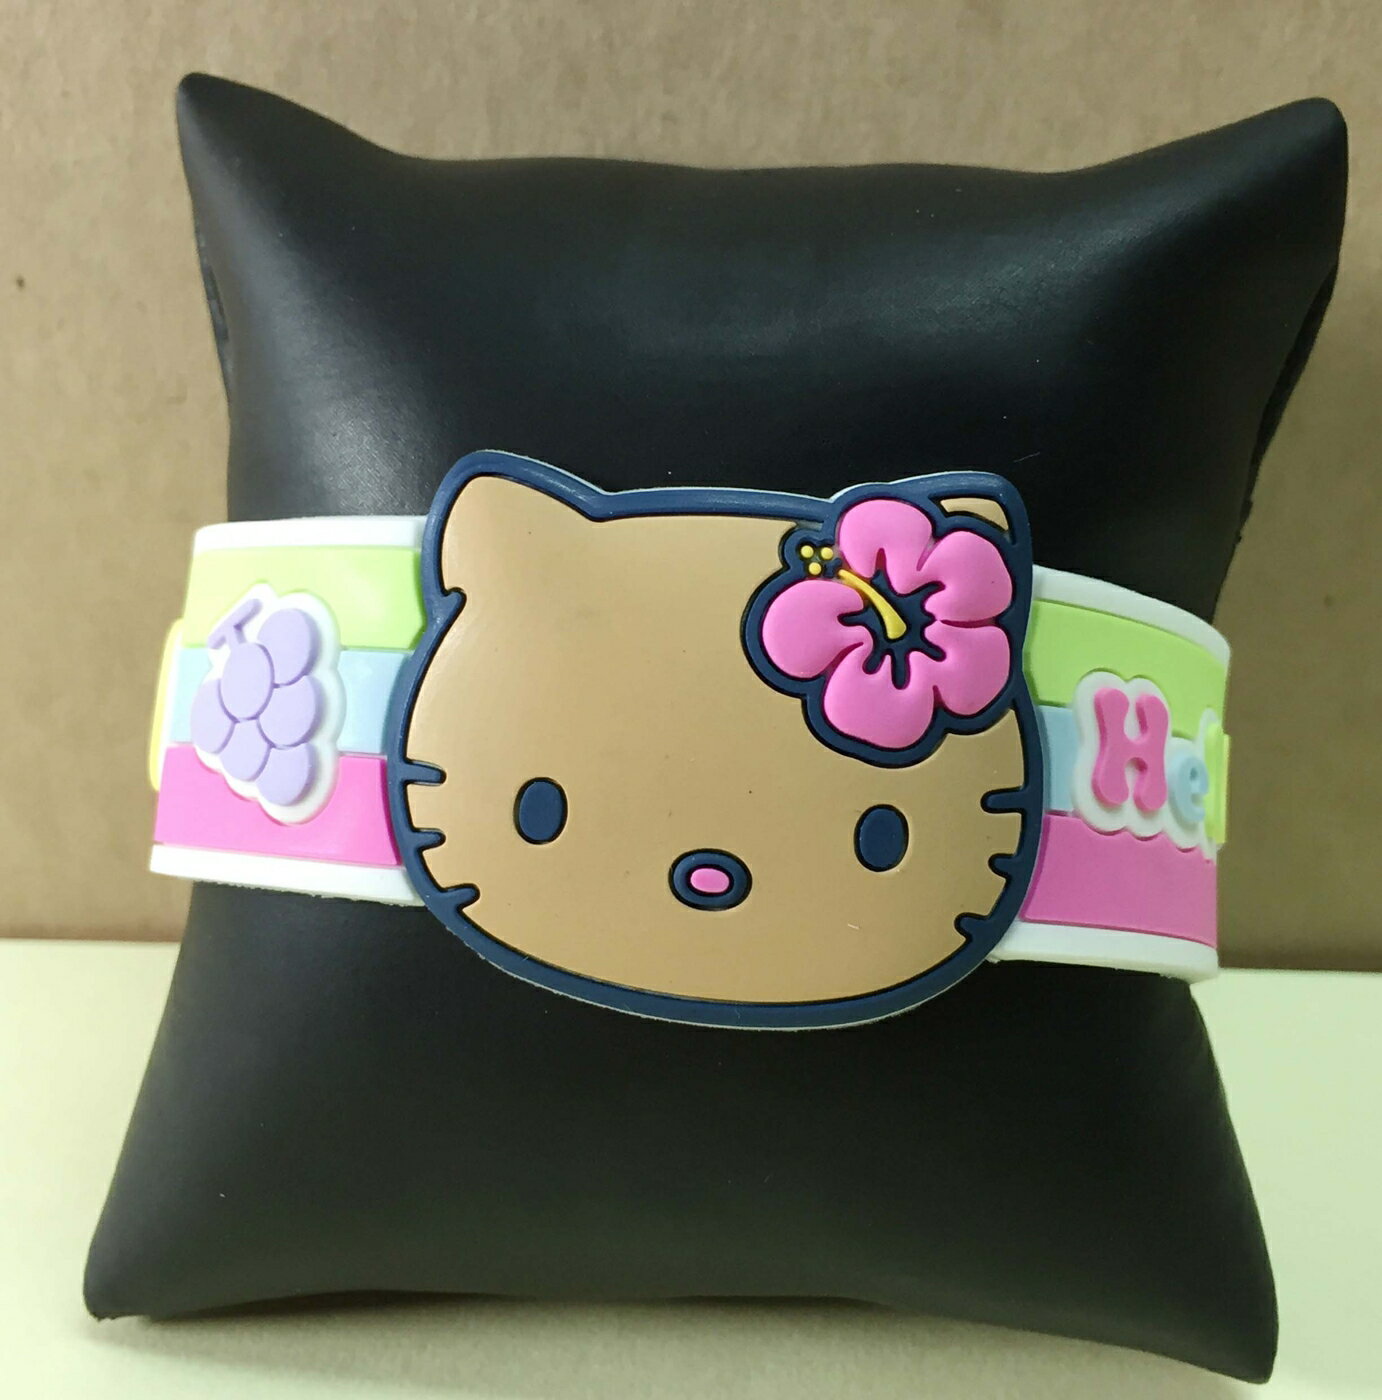 【震撼精品百貨】Hello Kitty 凱蒂貓 手環/手鍊-橡膠材質-黃花造型 震撼日式精品百貨